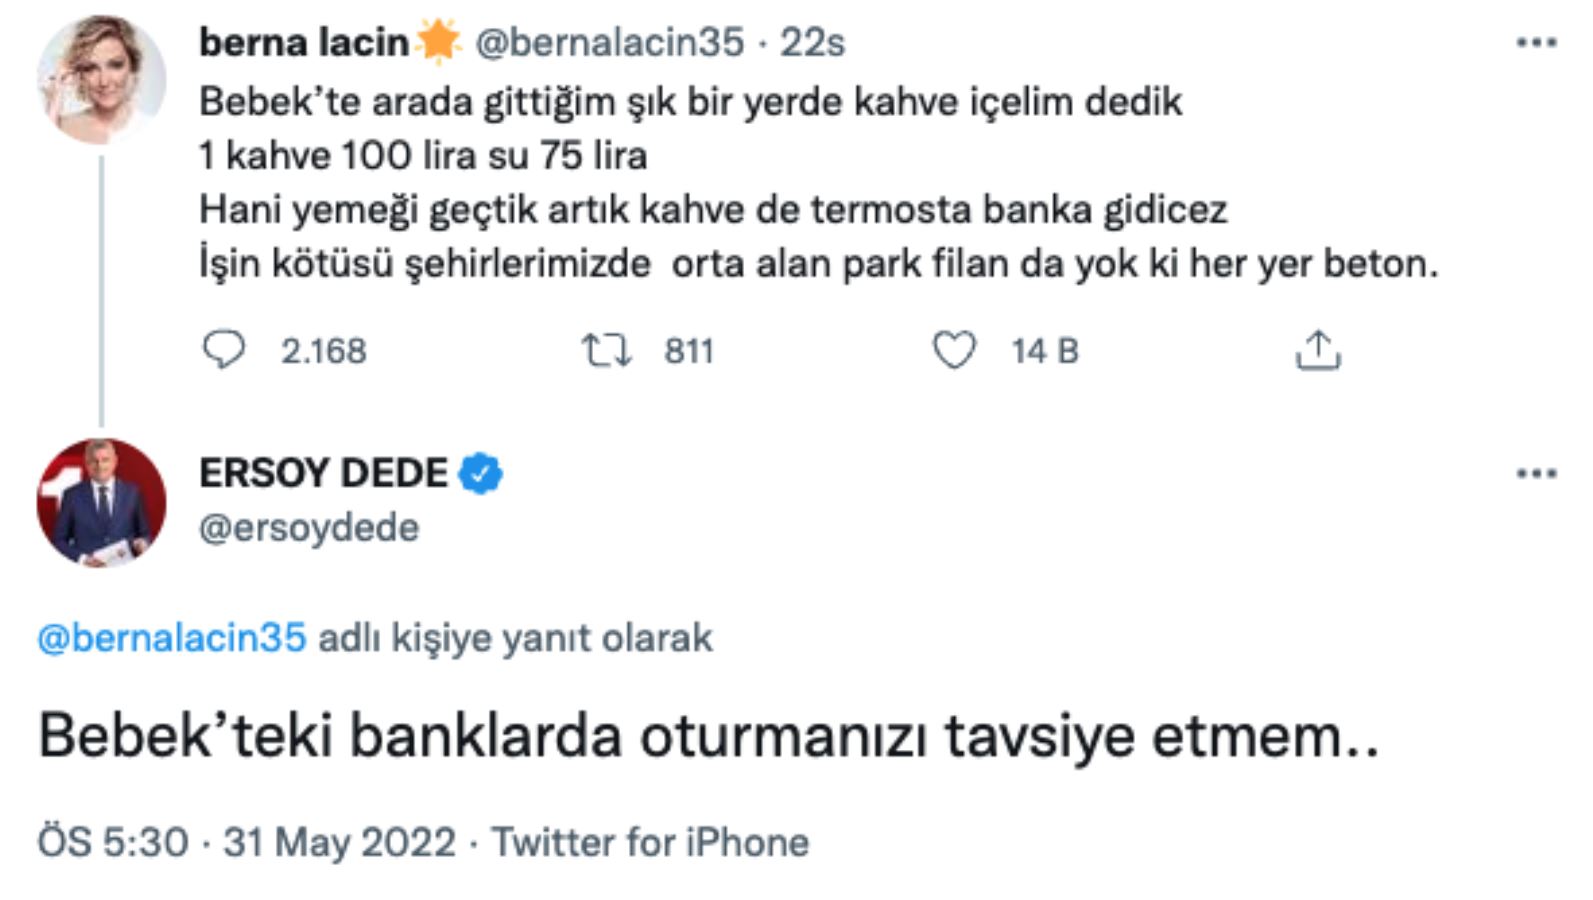 TRT sunucusu Ersoy Dede'den Berna Laçin’e tepki çeken 'Bebek' yanıtı